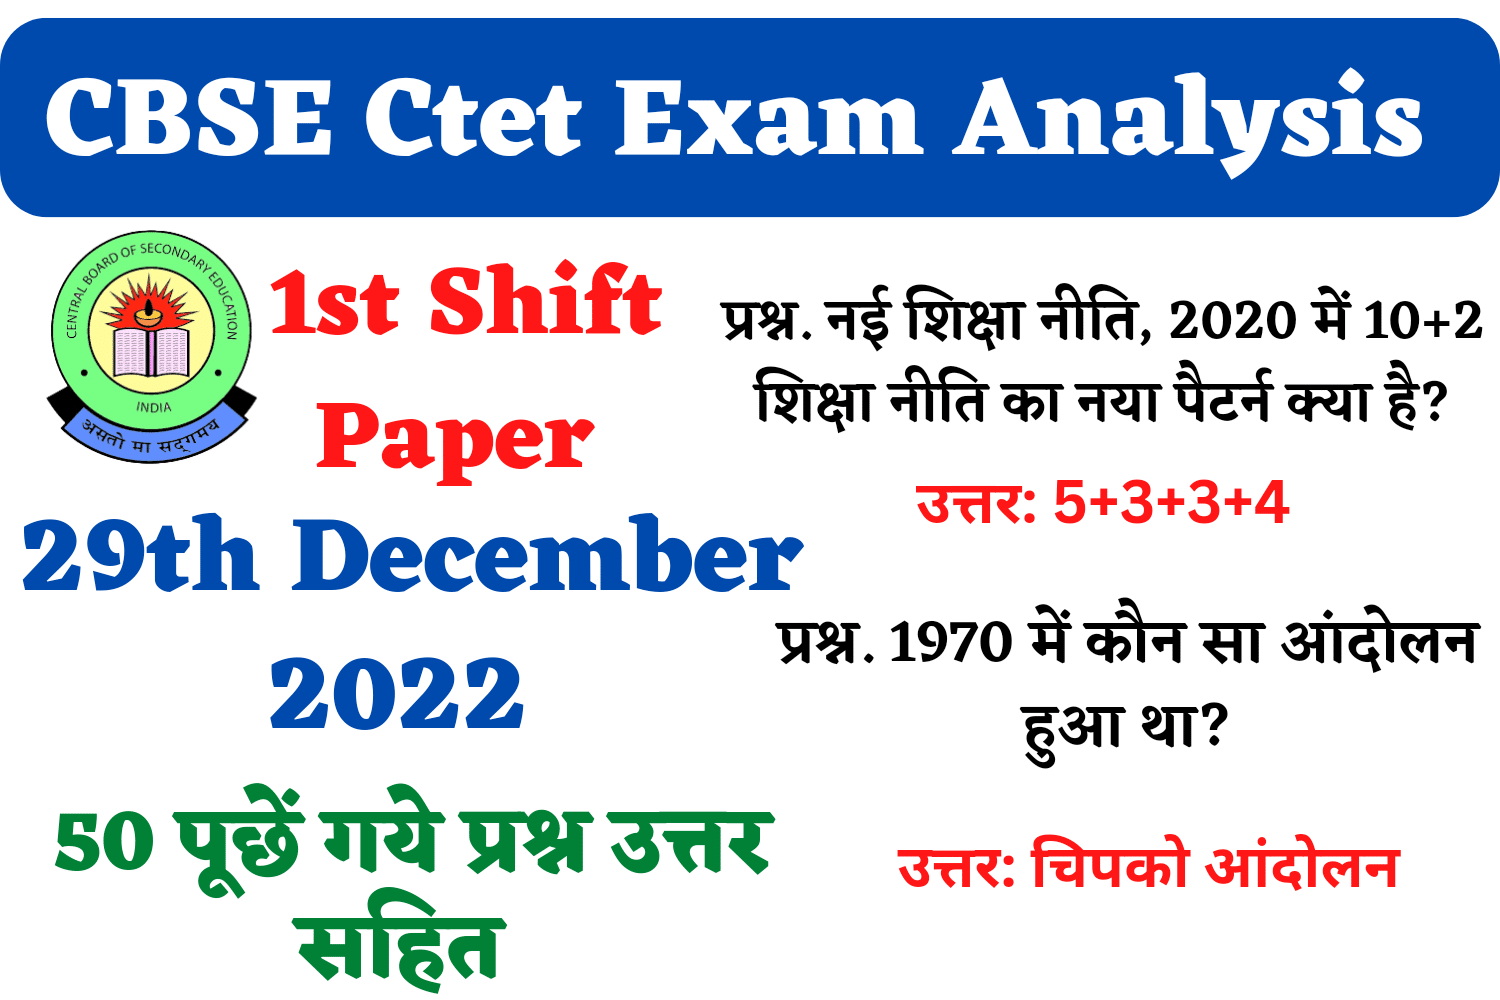 CBSE CTET 29th December 1st Shift Exam Analysis | सीटेट परीक्षा के 29 दिसम्बर की पहली शिफ्ट में पूछे गए प्रश्न और उत्तर, जरूर पढ़ें